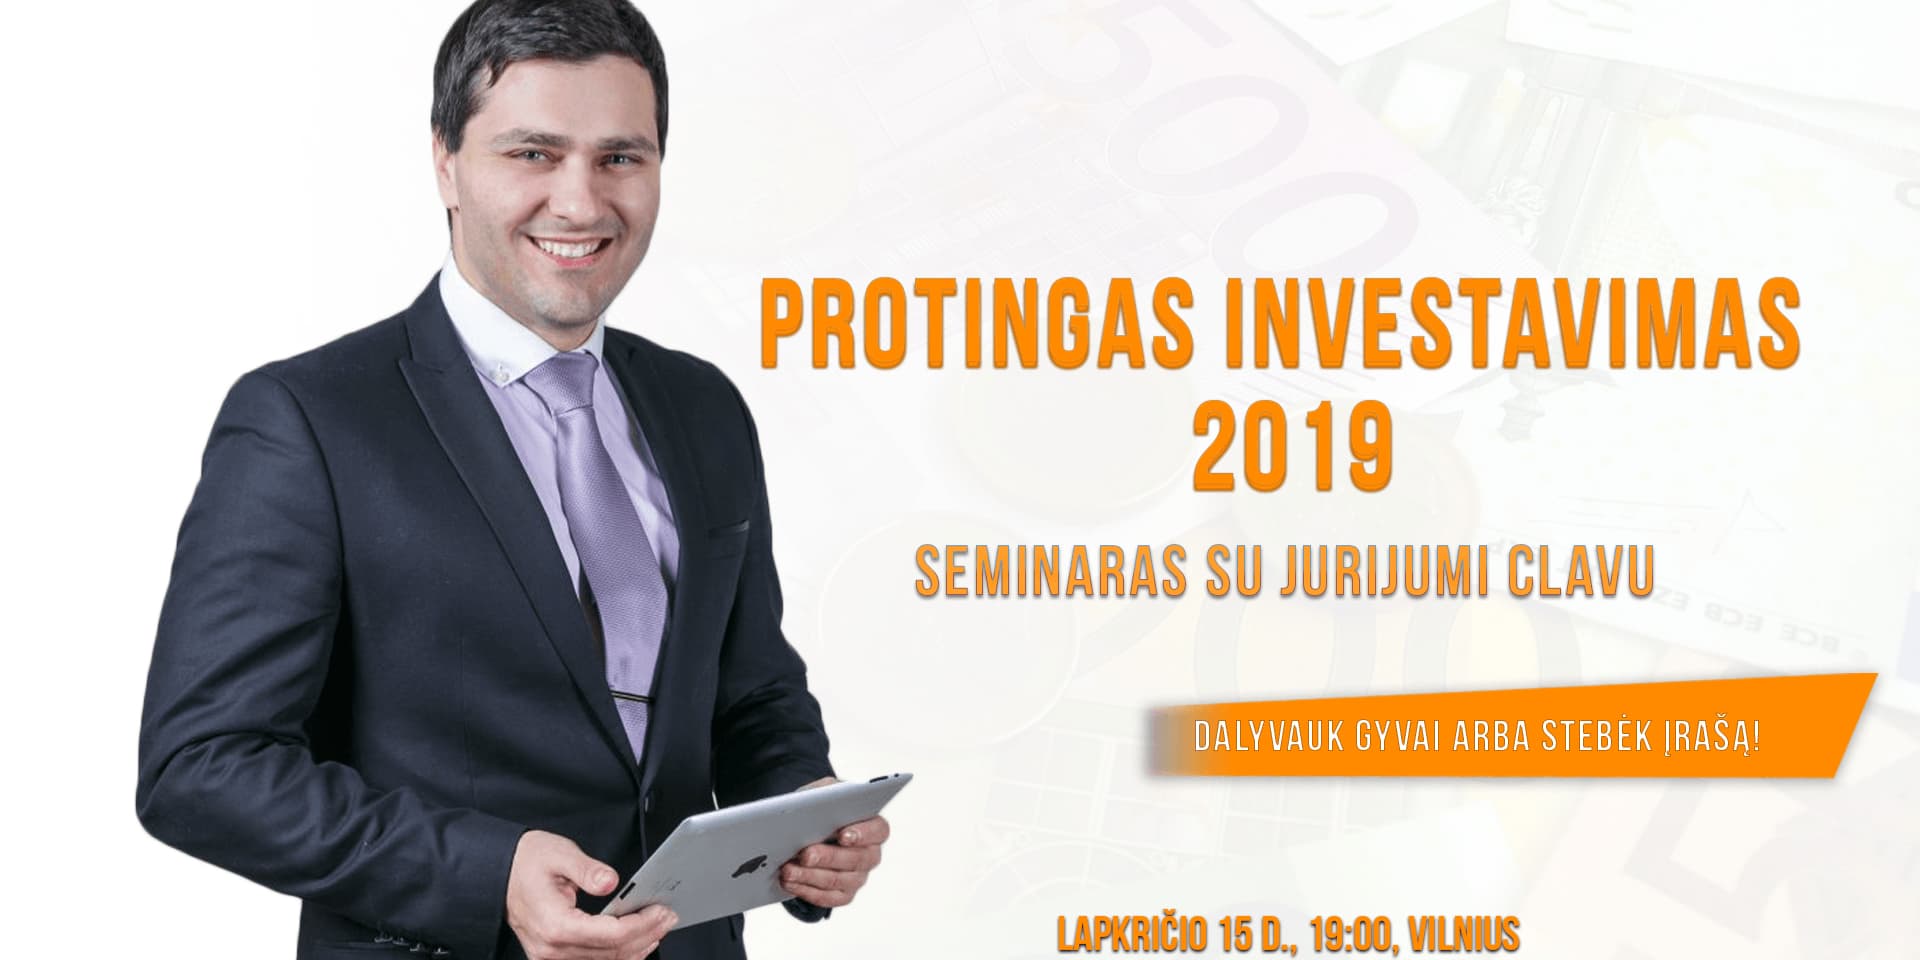 PROTINGAS INVESTAVIMAS 2019